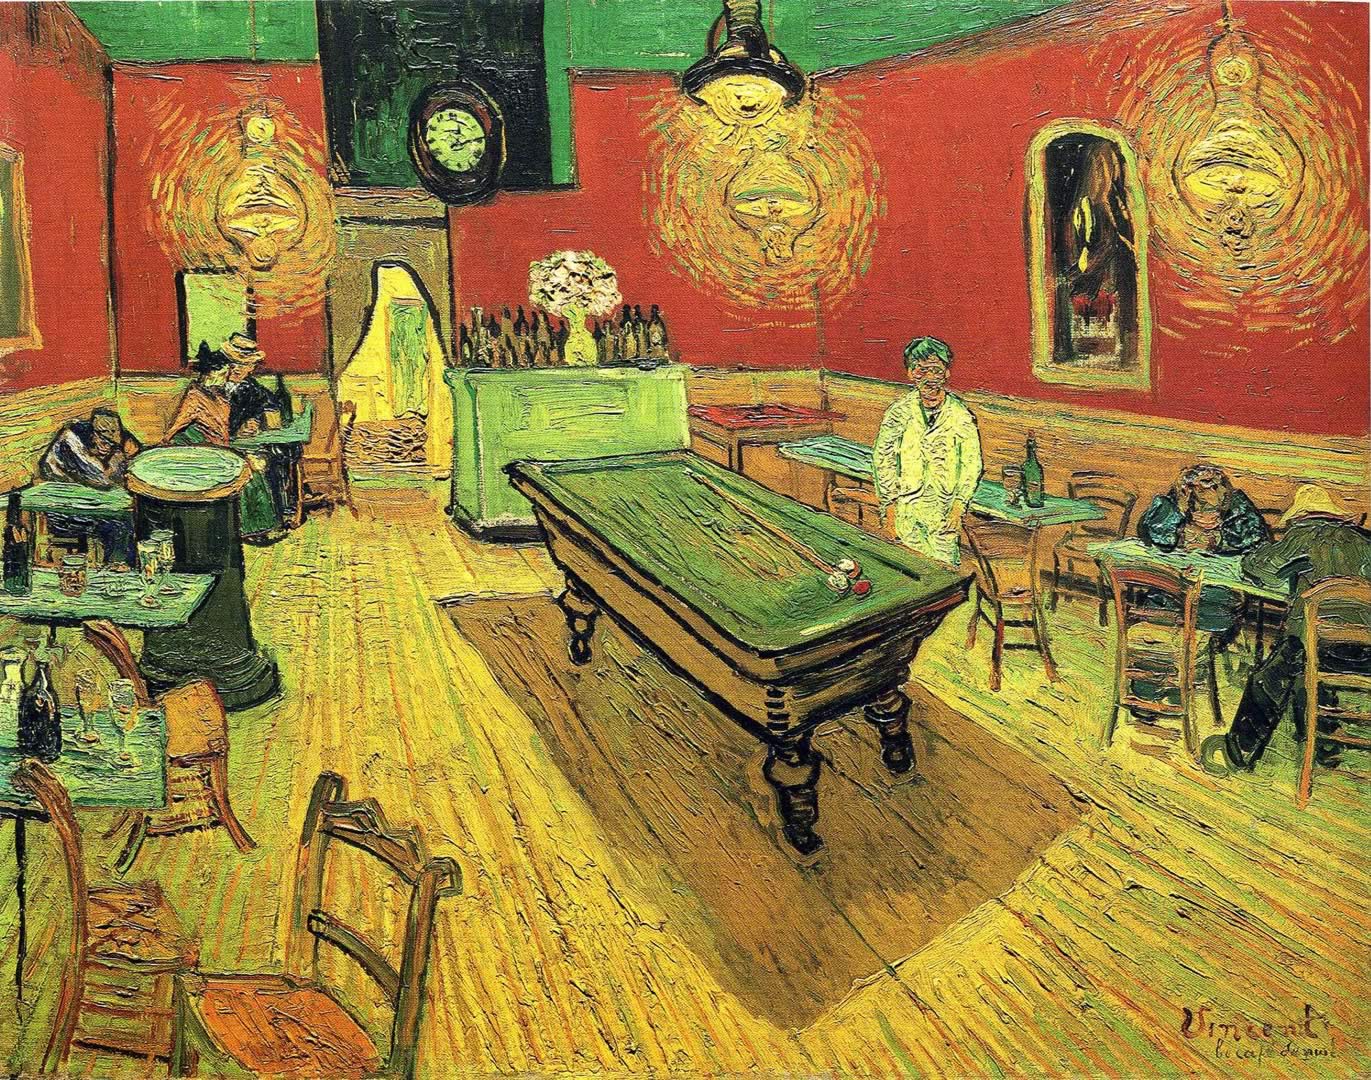 The Night Cafe - Vincent Van Gogh Interiors - HD Wallpaper 